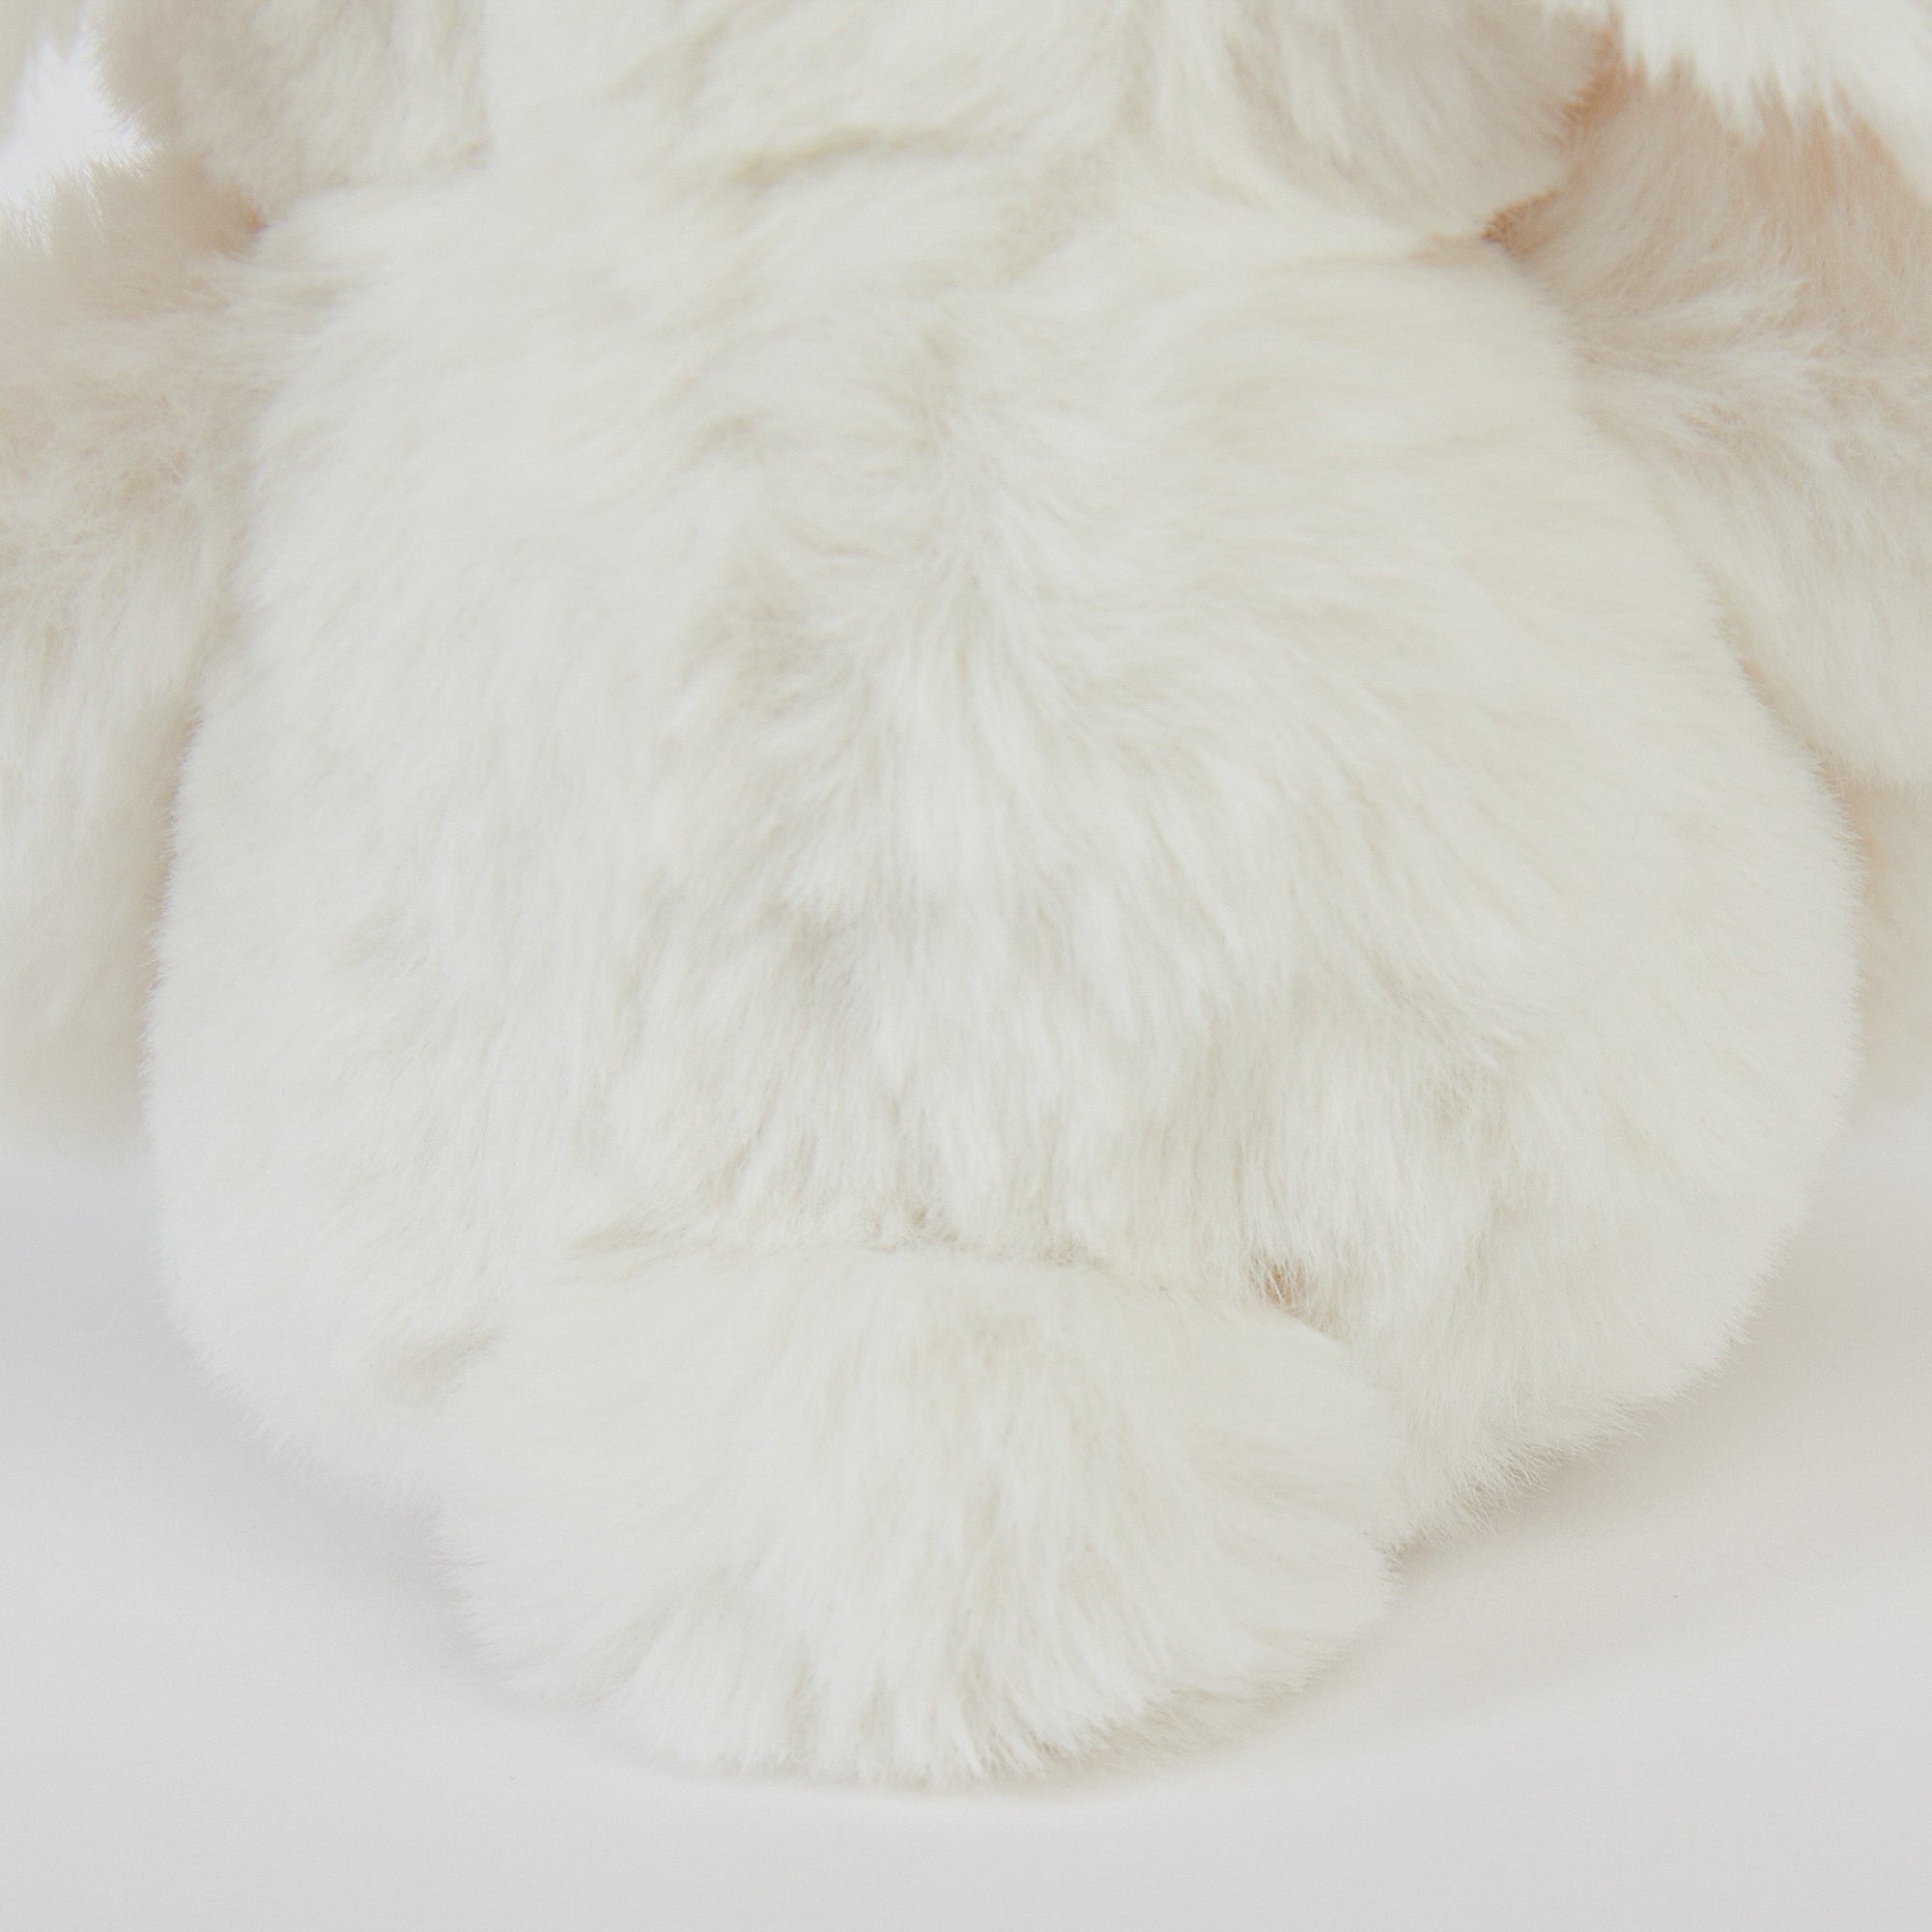 Baby Boys & Girls White Rabbit Toy(10cm)